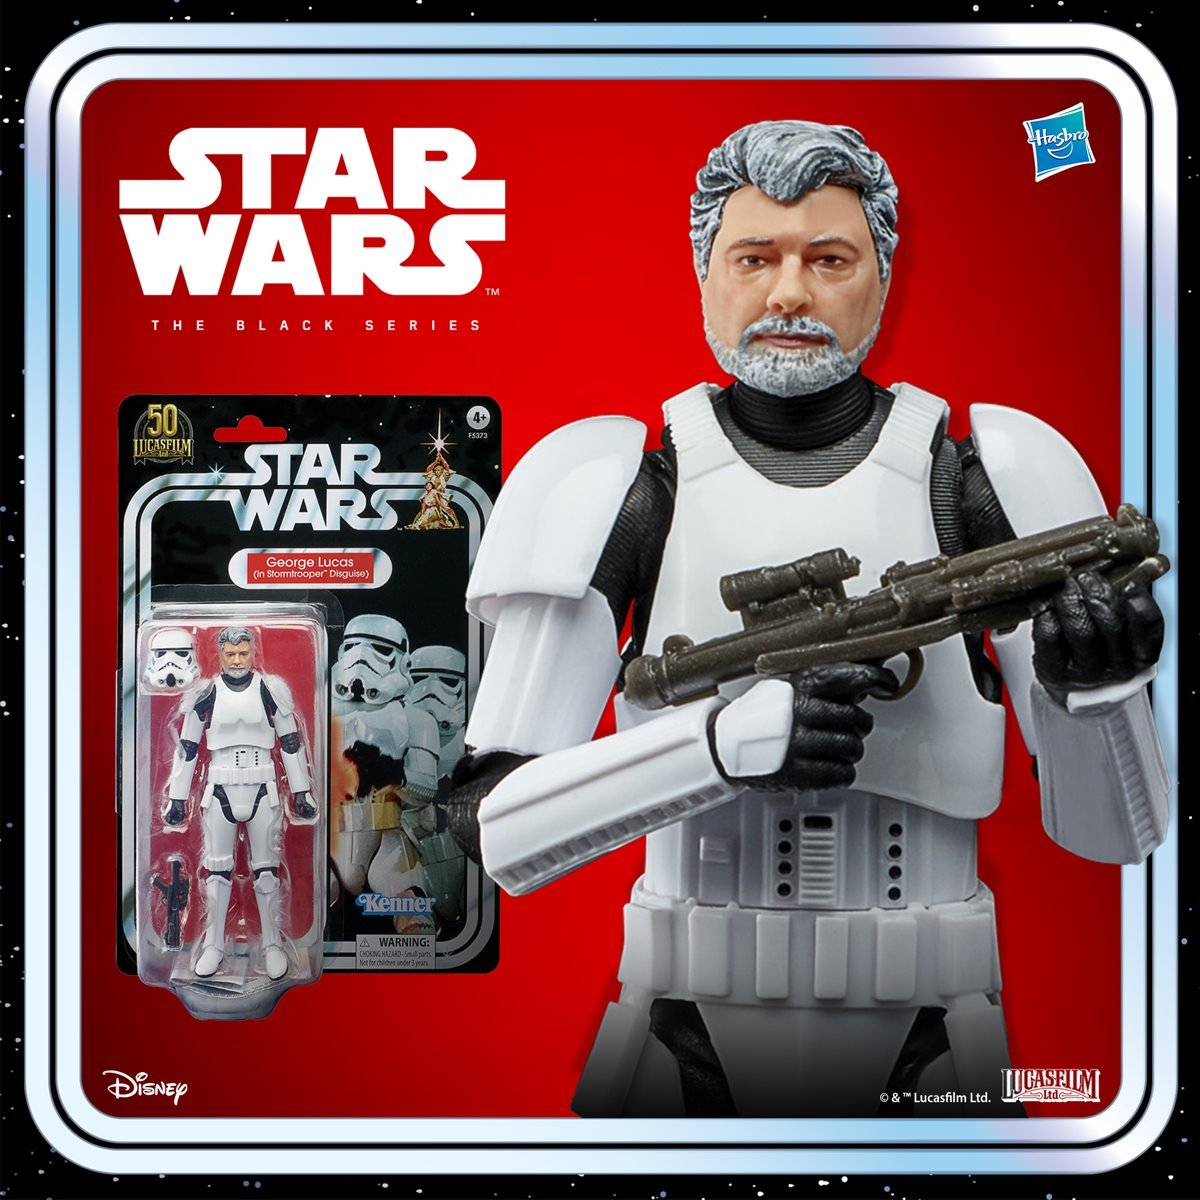 Star Wars: The Black Series George Lucas (in Stormtrooper Disguise) Hasbro